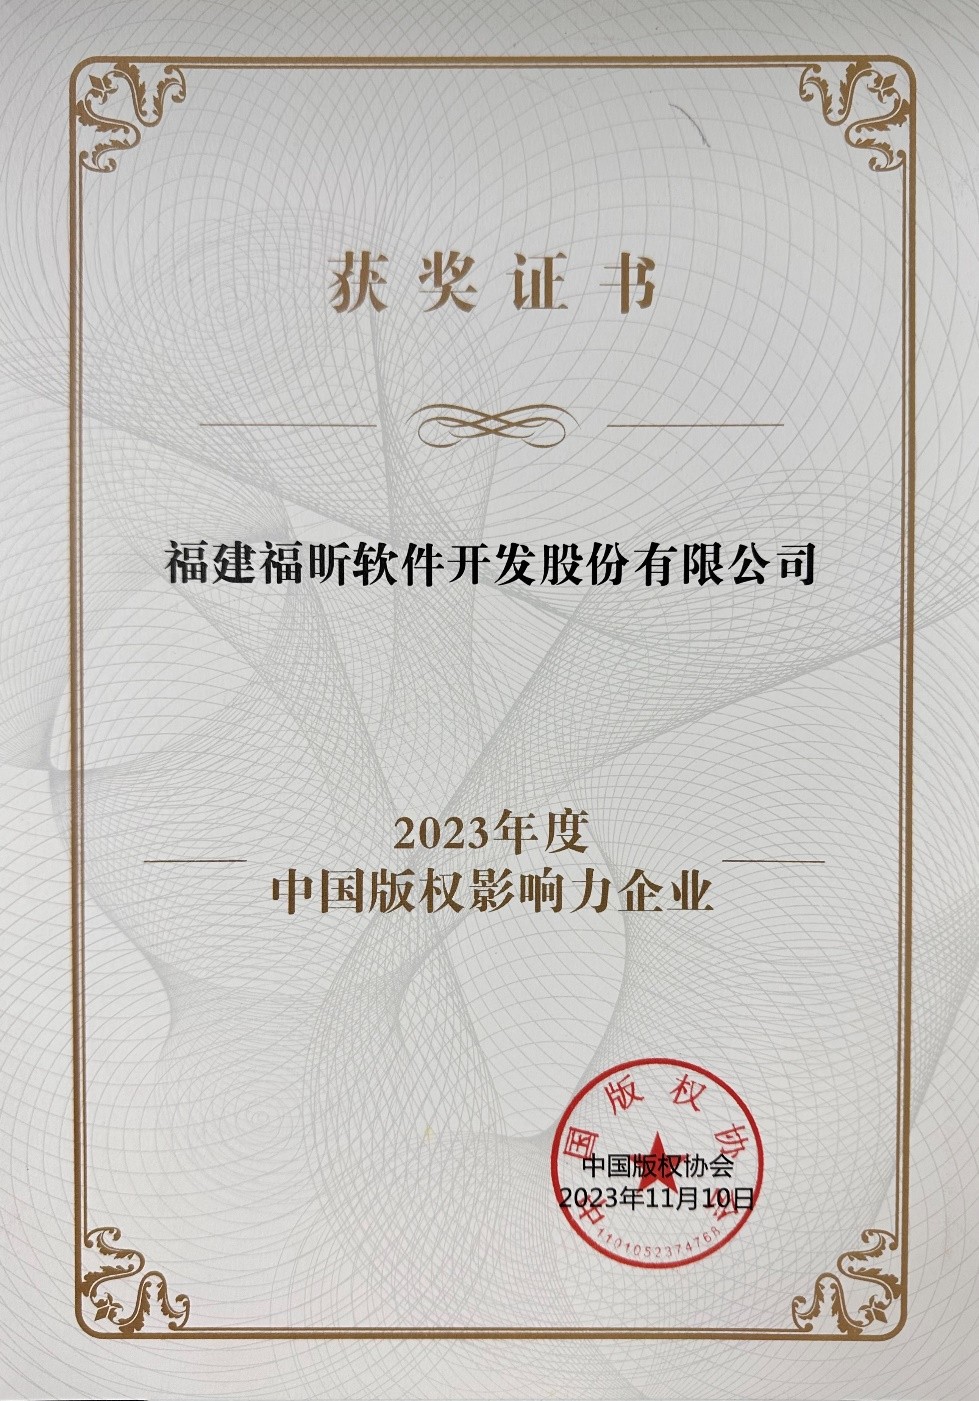 福昕软件获评2023年度中国版权影响力企业